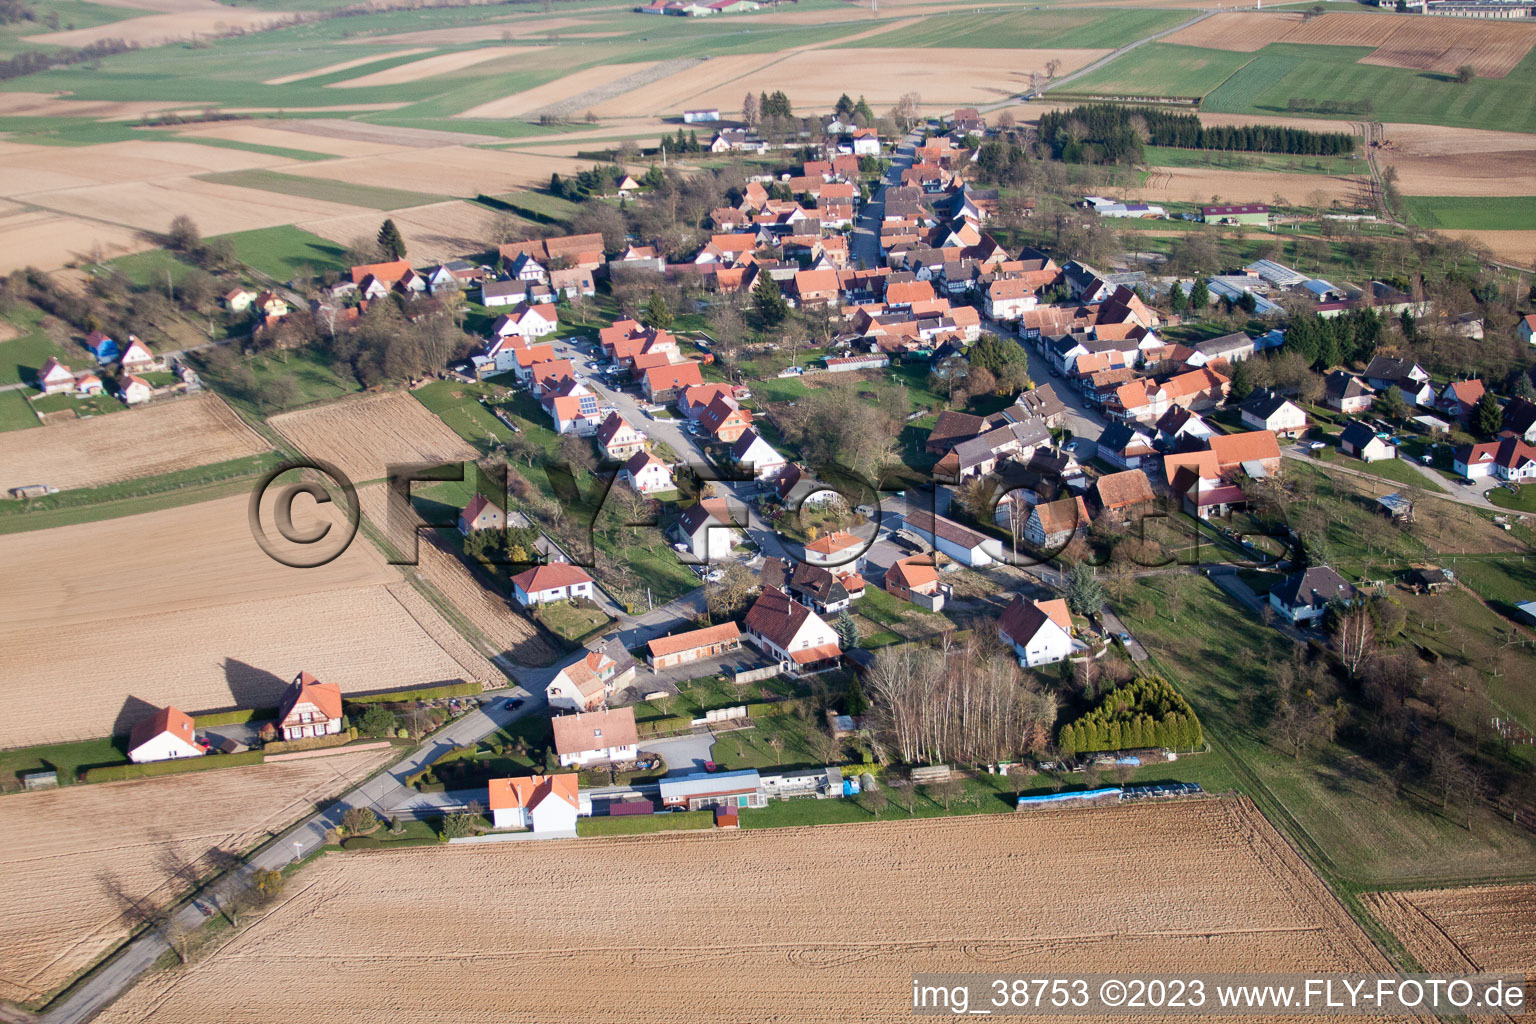 Retschwiller dans le département Bas Rhin, France vue d'en haut